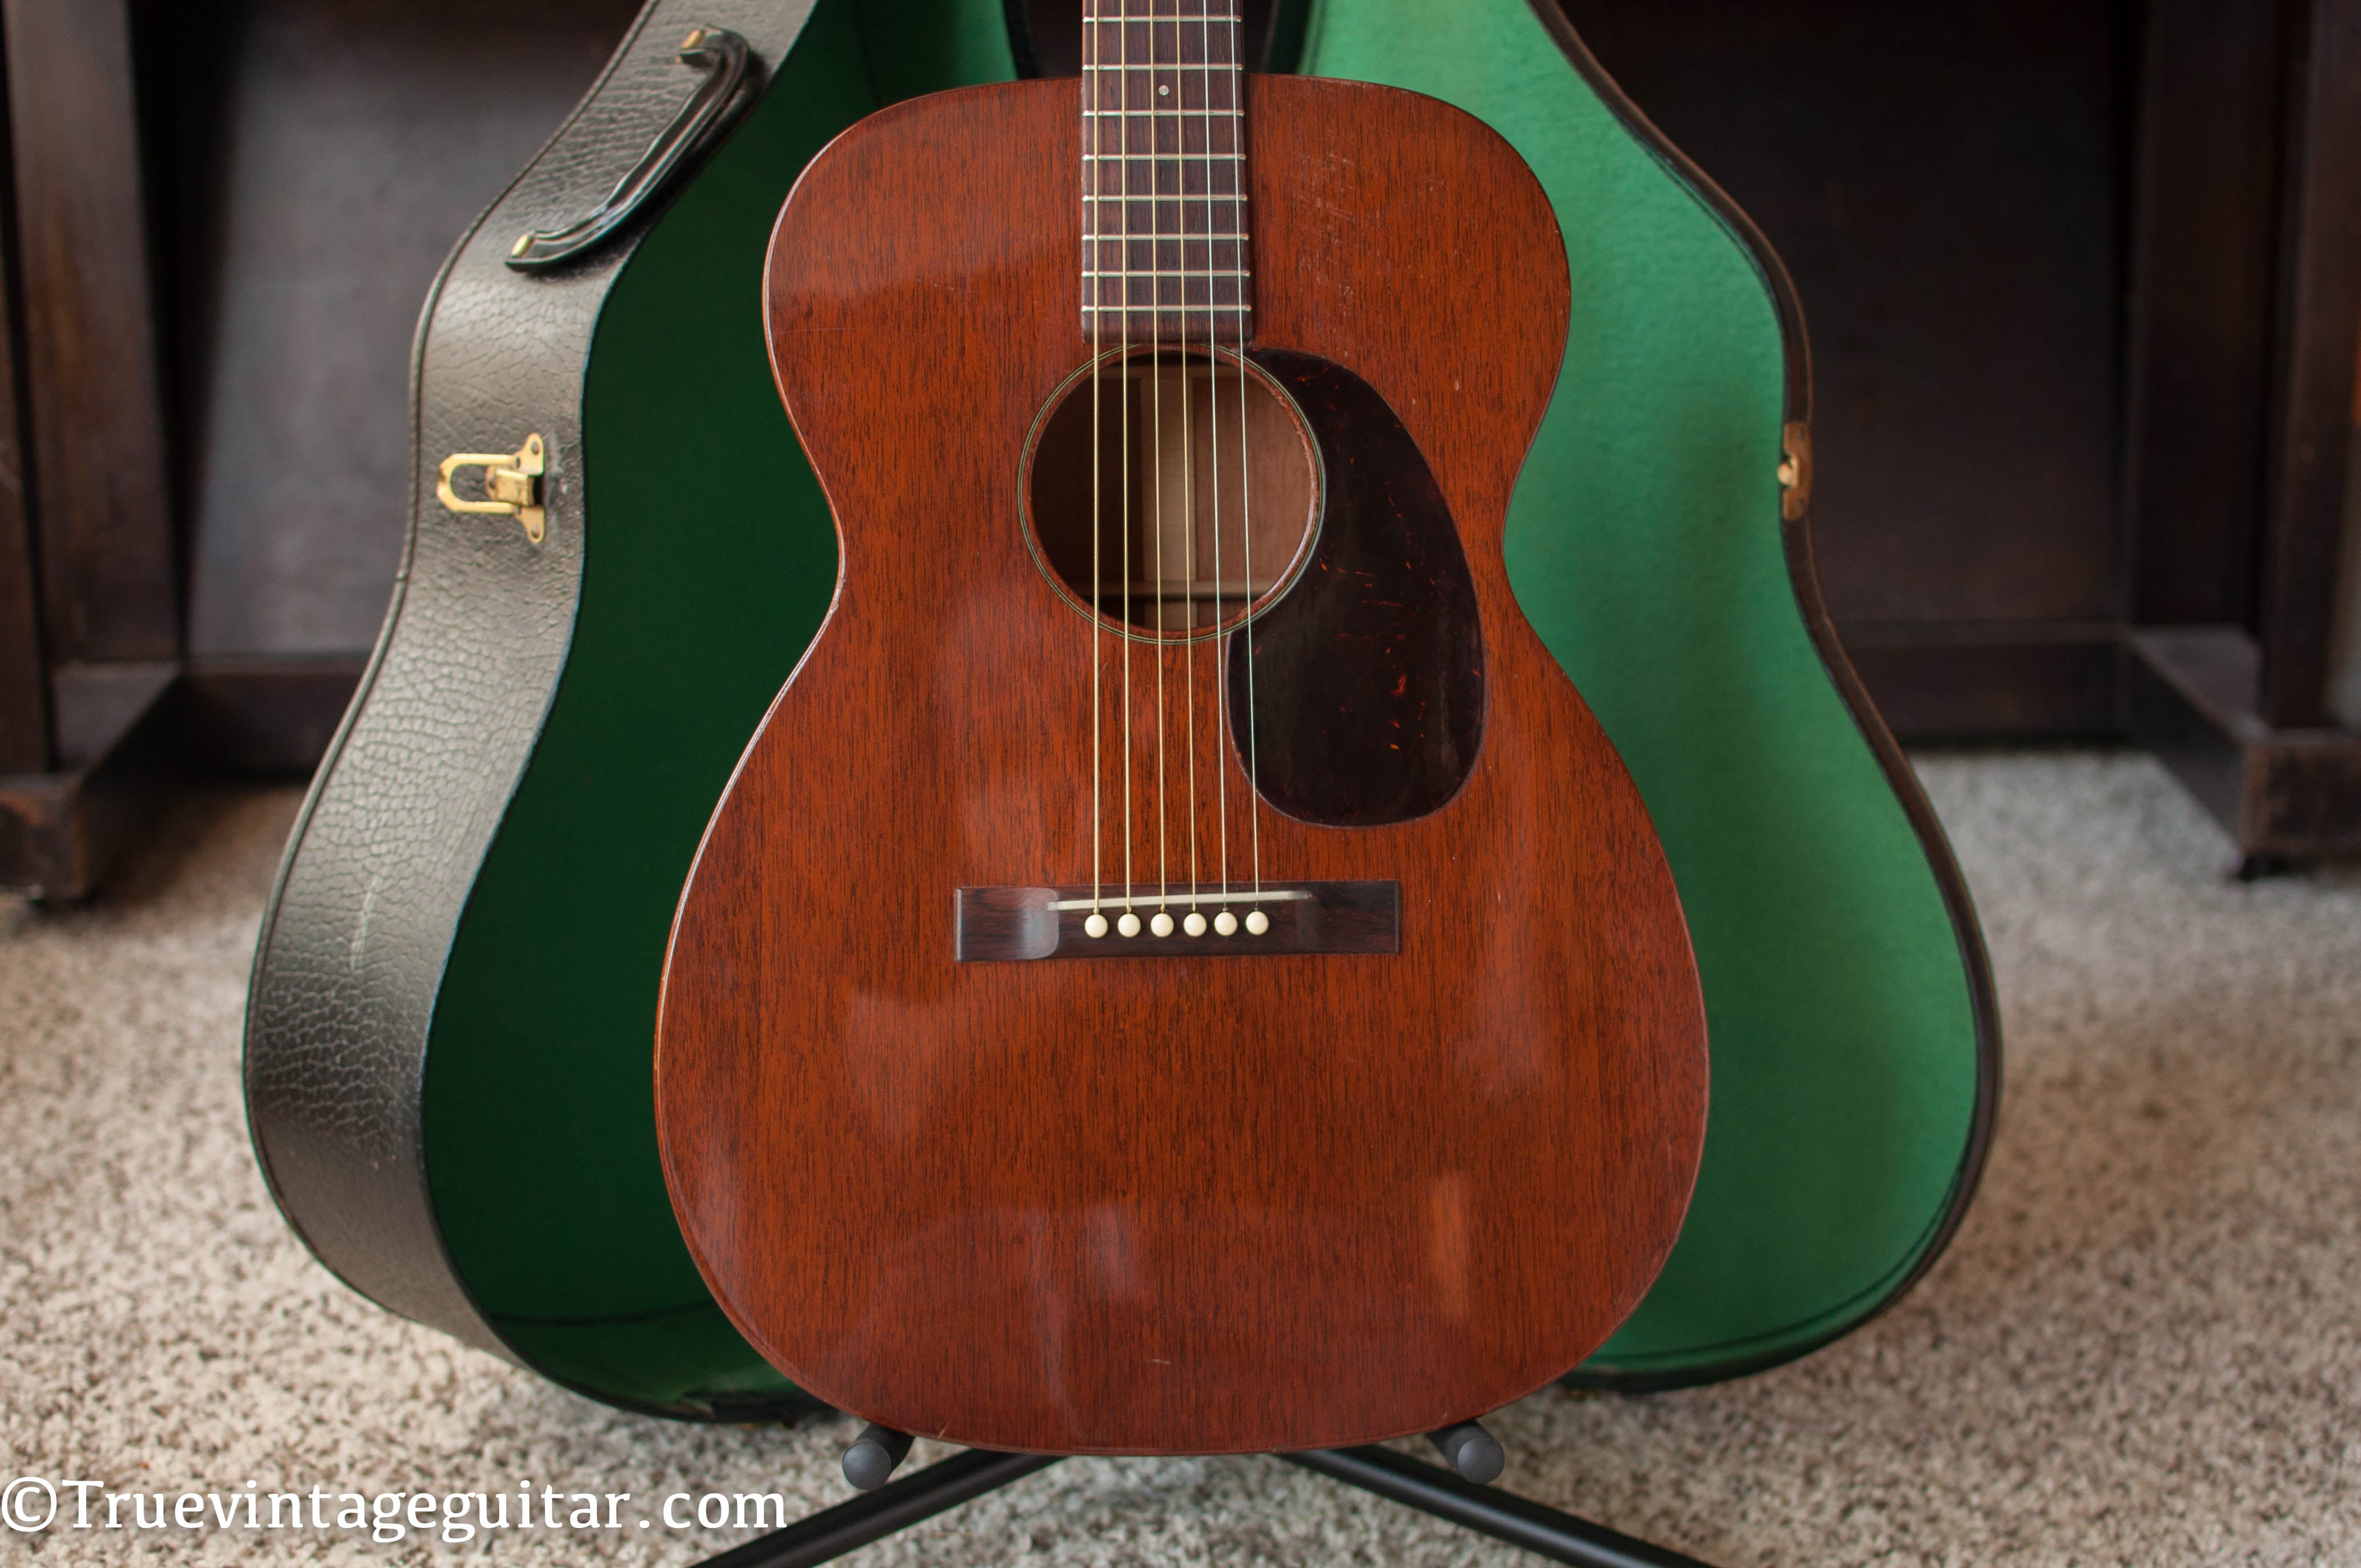 1954 Martin 00-17 acoustic guitar Mahogany top